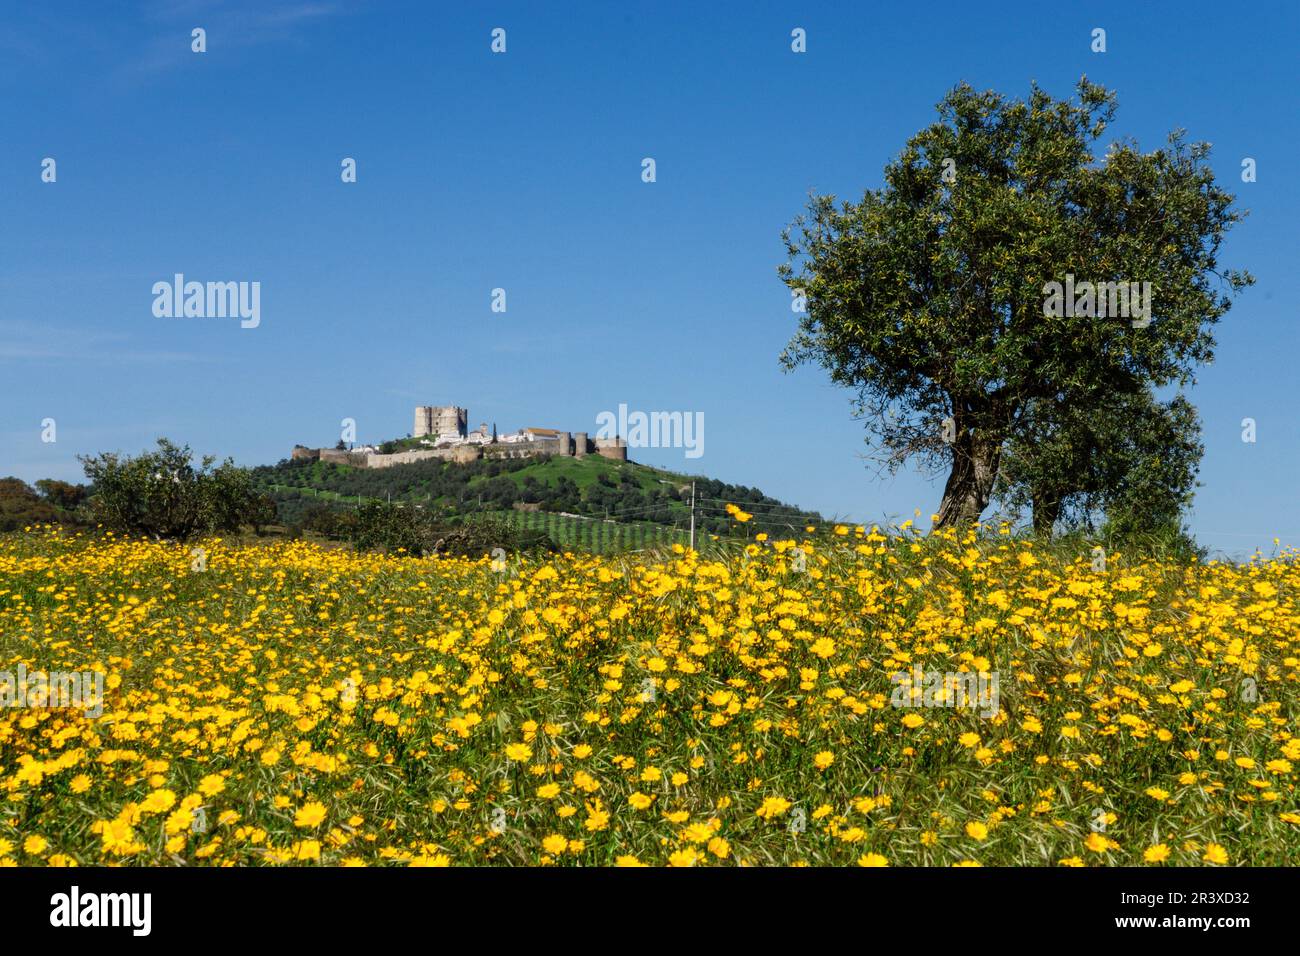 campo florido y castillo, Evoramonte ( concejo de Estremoz), Alentejo, Portugal, europa. Stock Photo